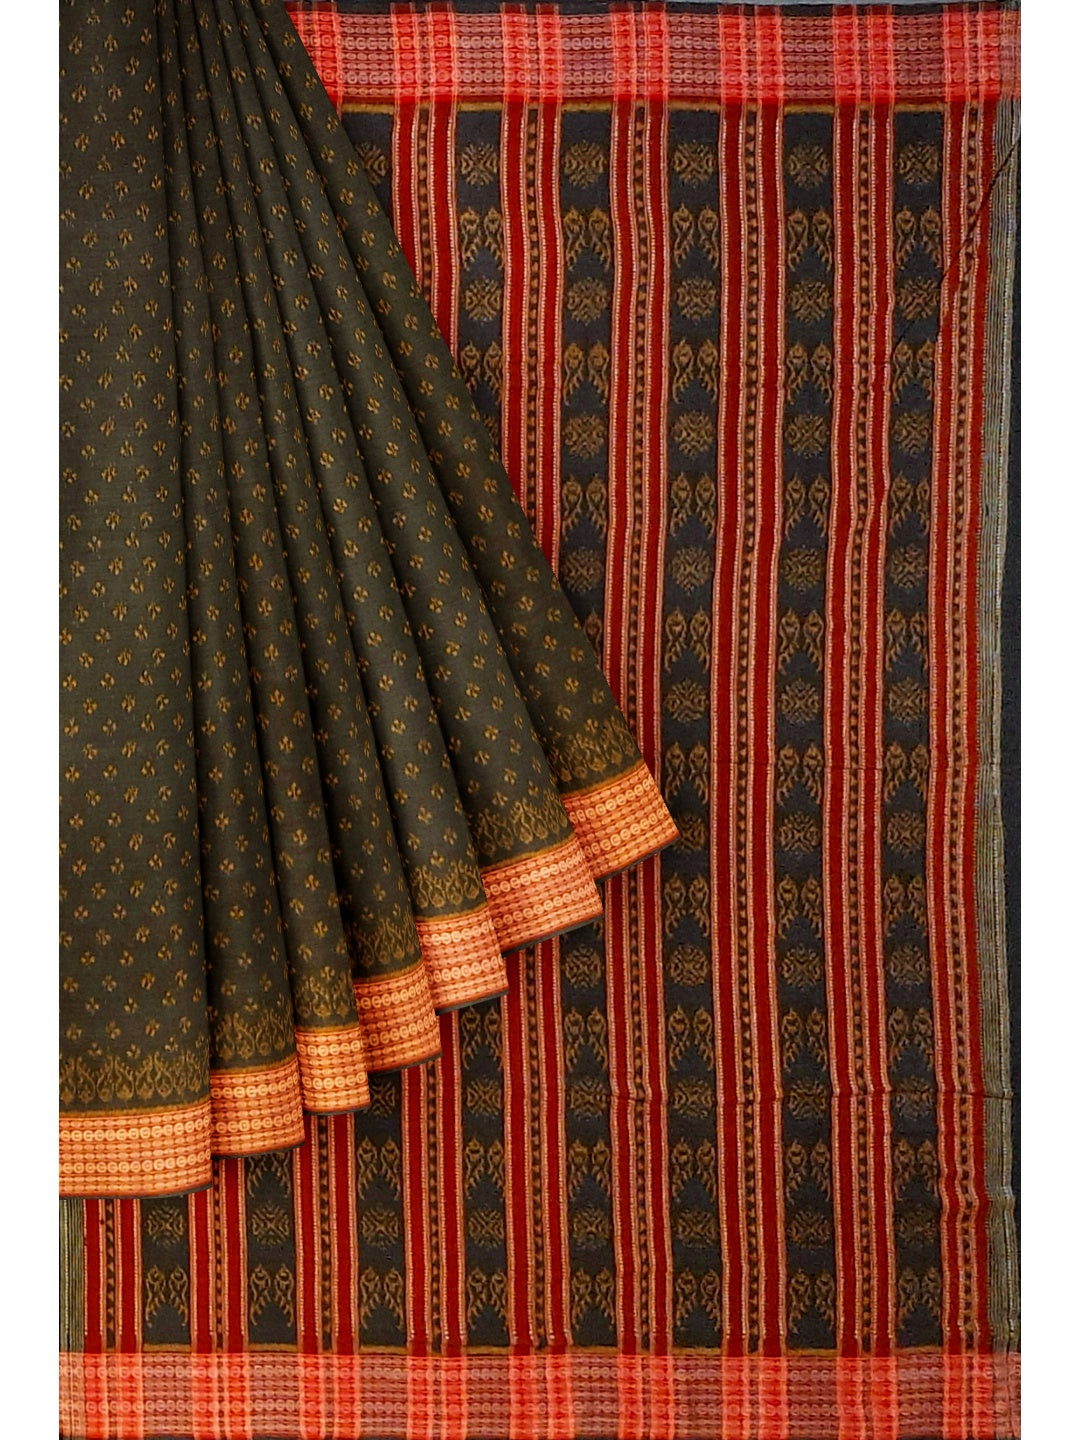 Black Sambalpuri Cotton Saree with running blouse peice